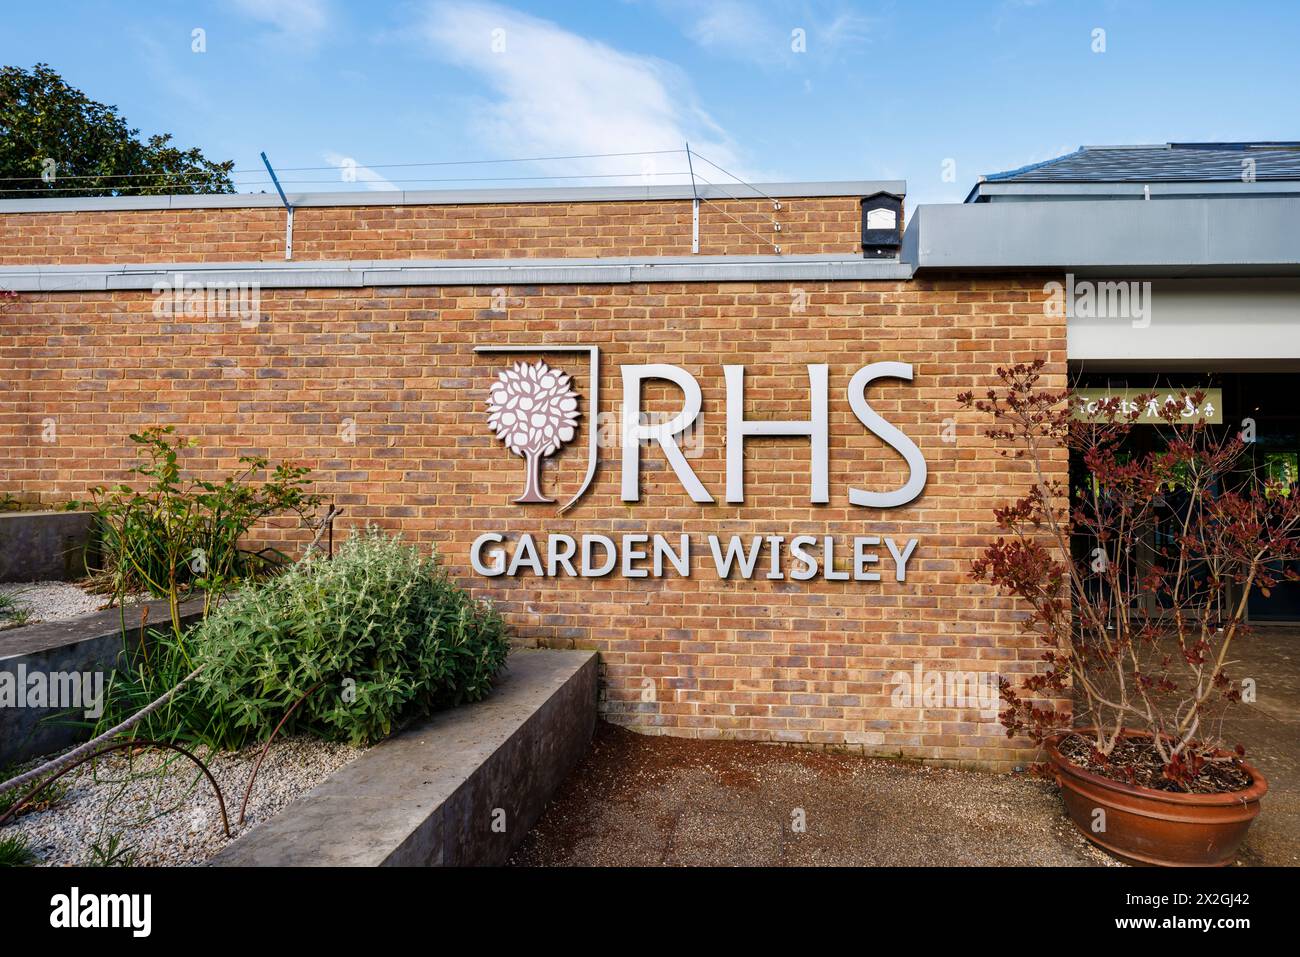 Le logo RHS et le signe nominatif à l'entrée du jardin RHS, Wisley, Surrey, sud-est de l'Angleterre au printemps Banque D'Images